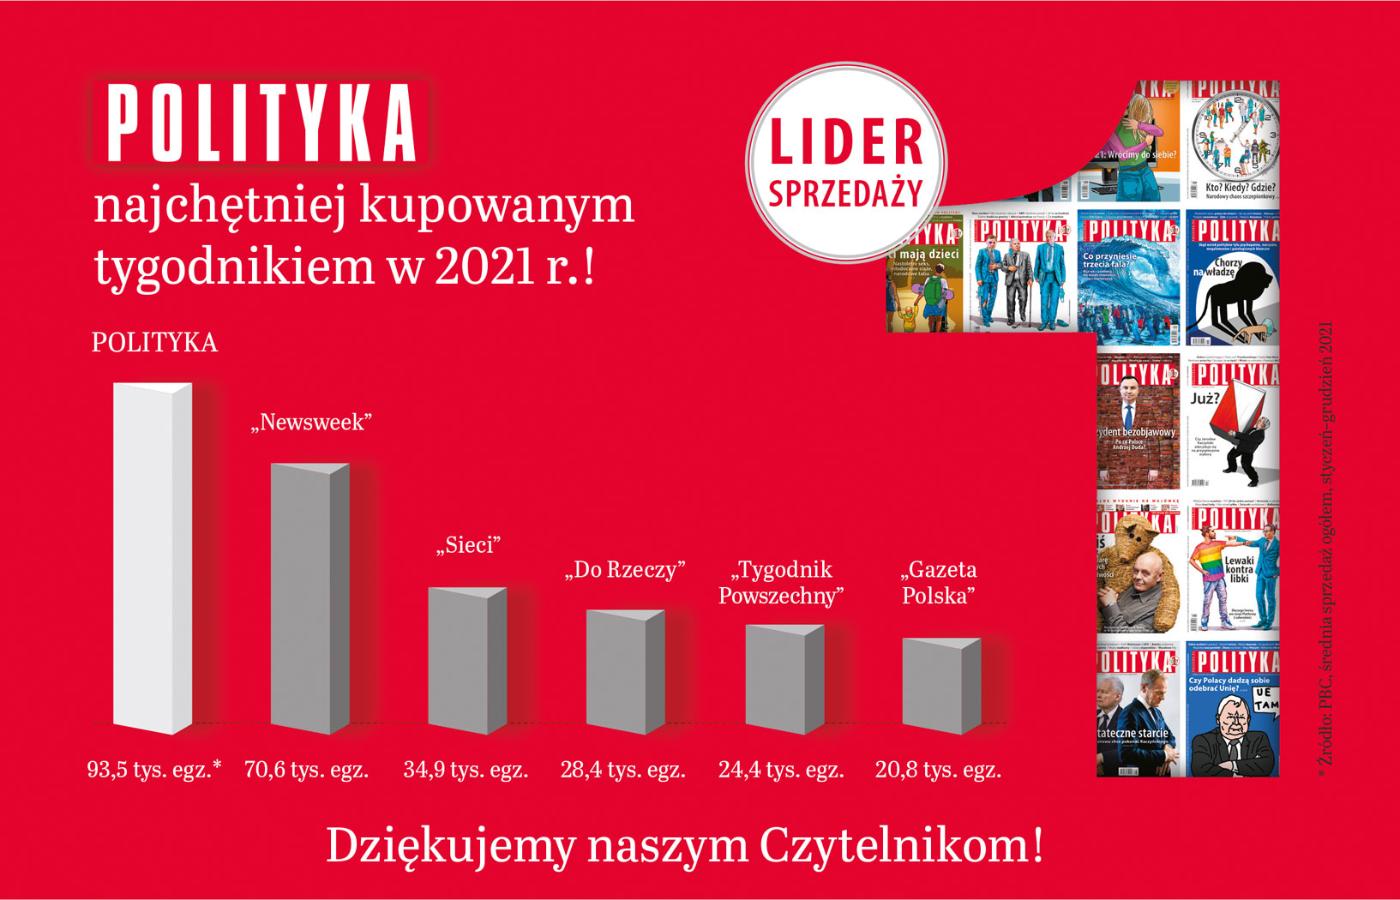 POLITYKA odnotowała w 2021 r. najwyższą sprzedaż spośród wszystkich tygodników opinii w Polsce.